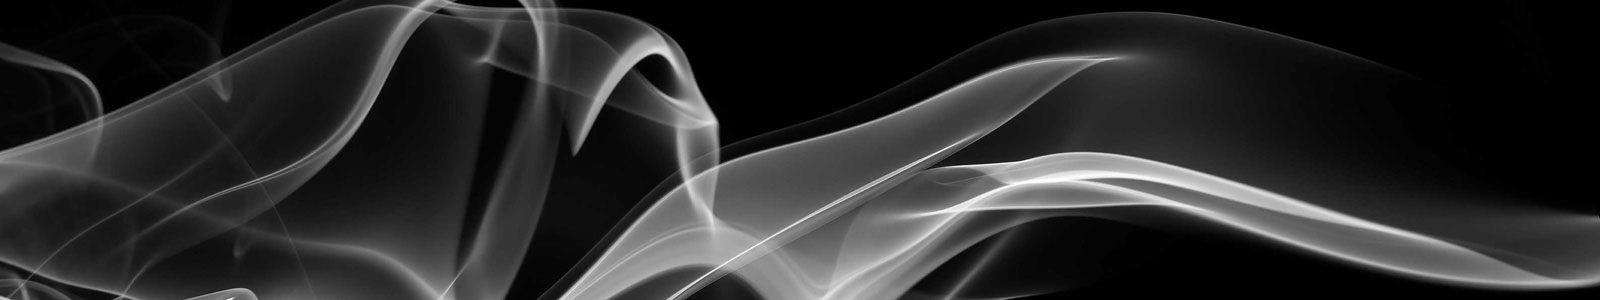 №5484 - Черно-белая абстракция с дымом